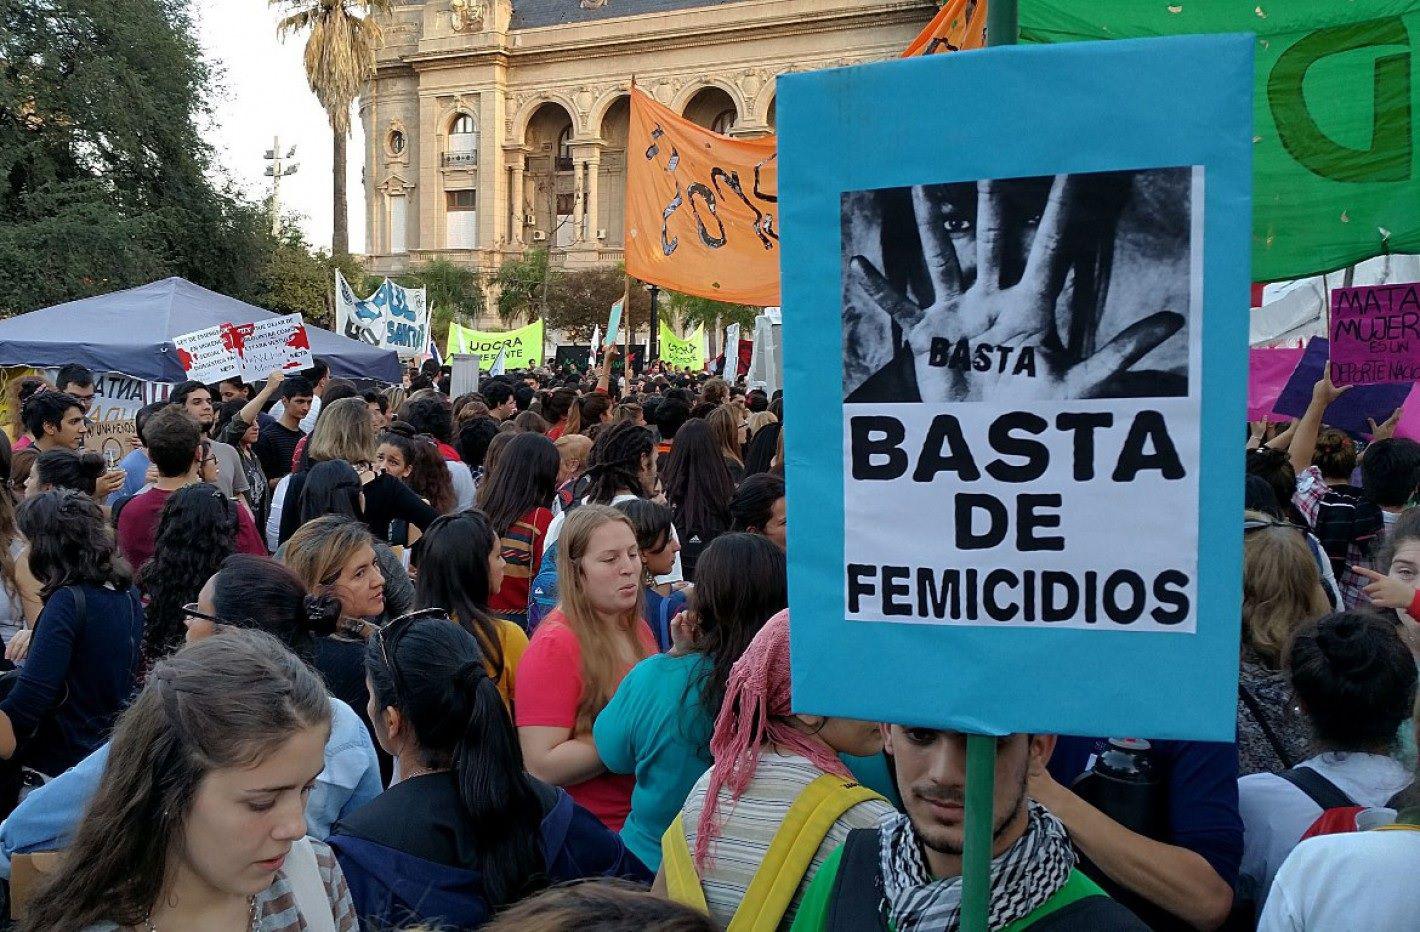 Diacutea Internacional de la Eliminacioacuten de la Violencia contra la Mujer- un femicidio cada 33 horas en Argentina